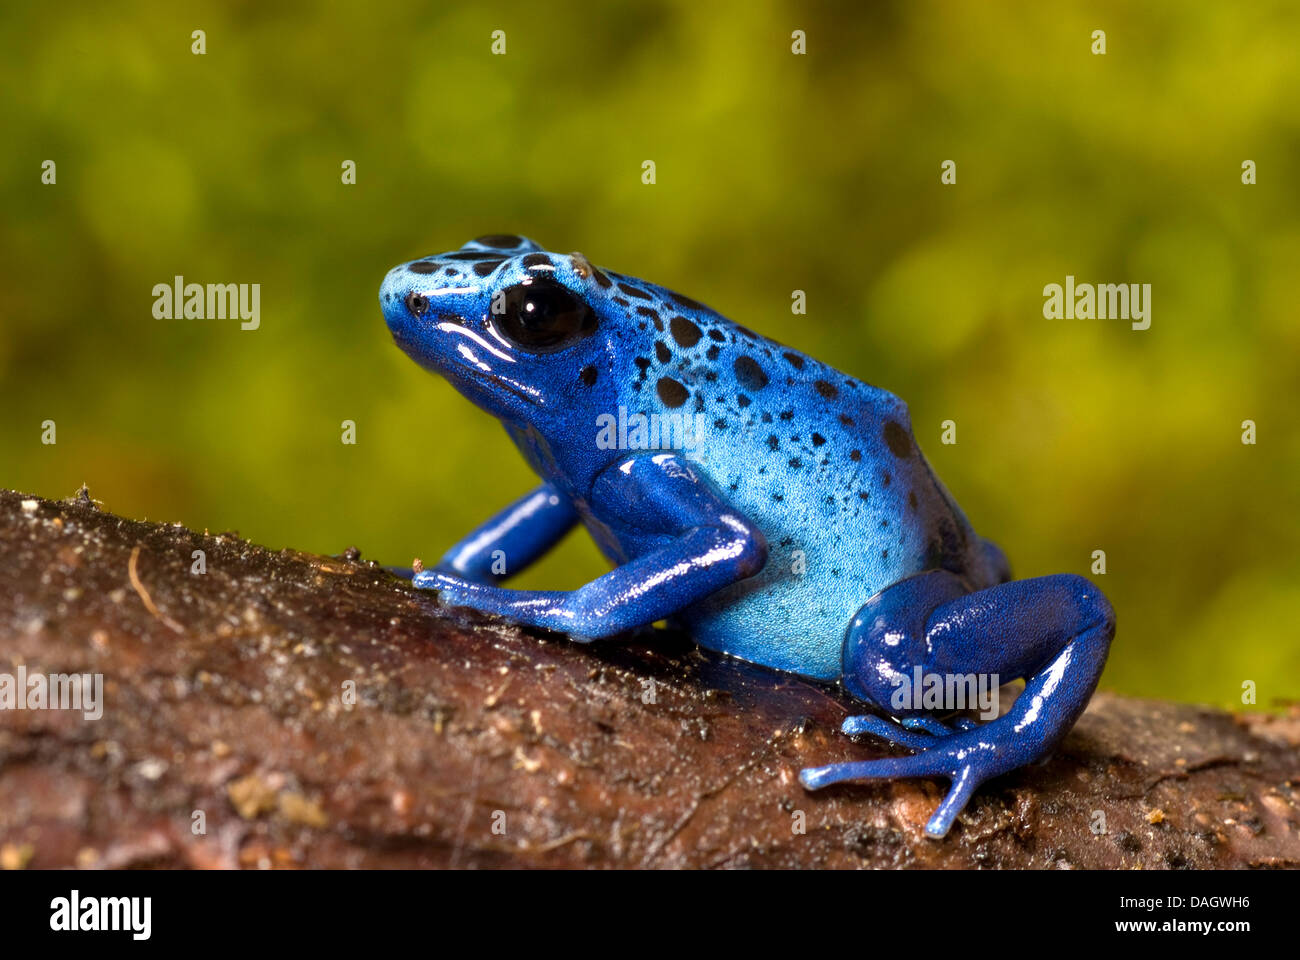 Teñido de azul de veneno, rana flecha azul rana venenosa (Dendrobates tinctorius azureus), blue Morph Azureus sentada sobre un tronco de árbol Foto de stock